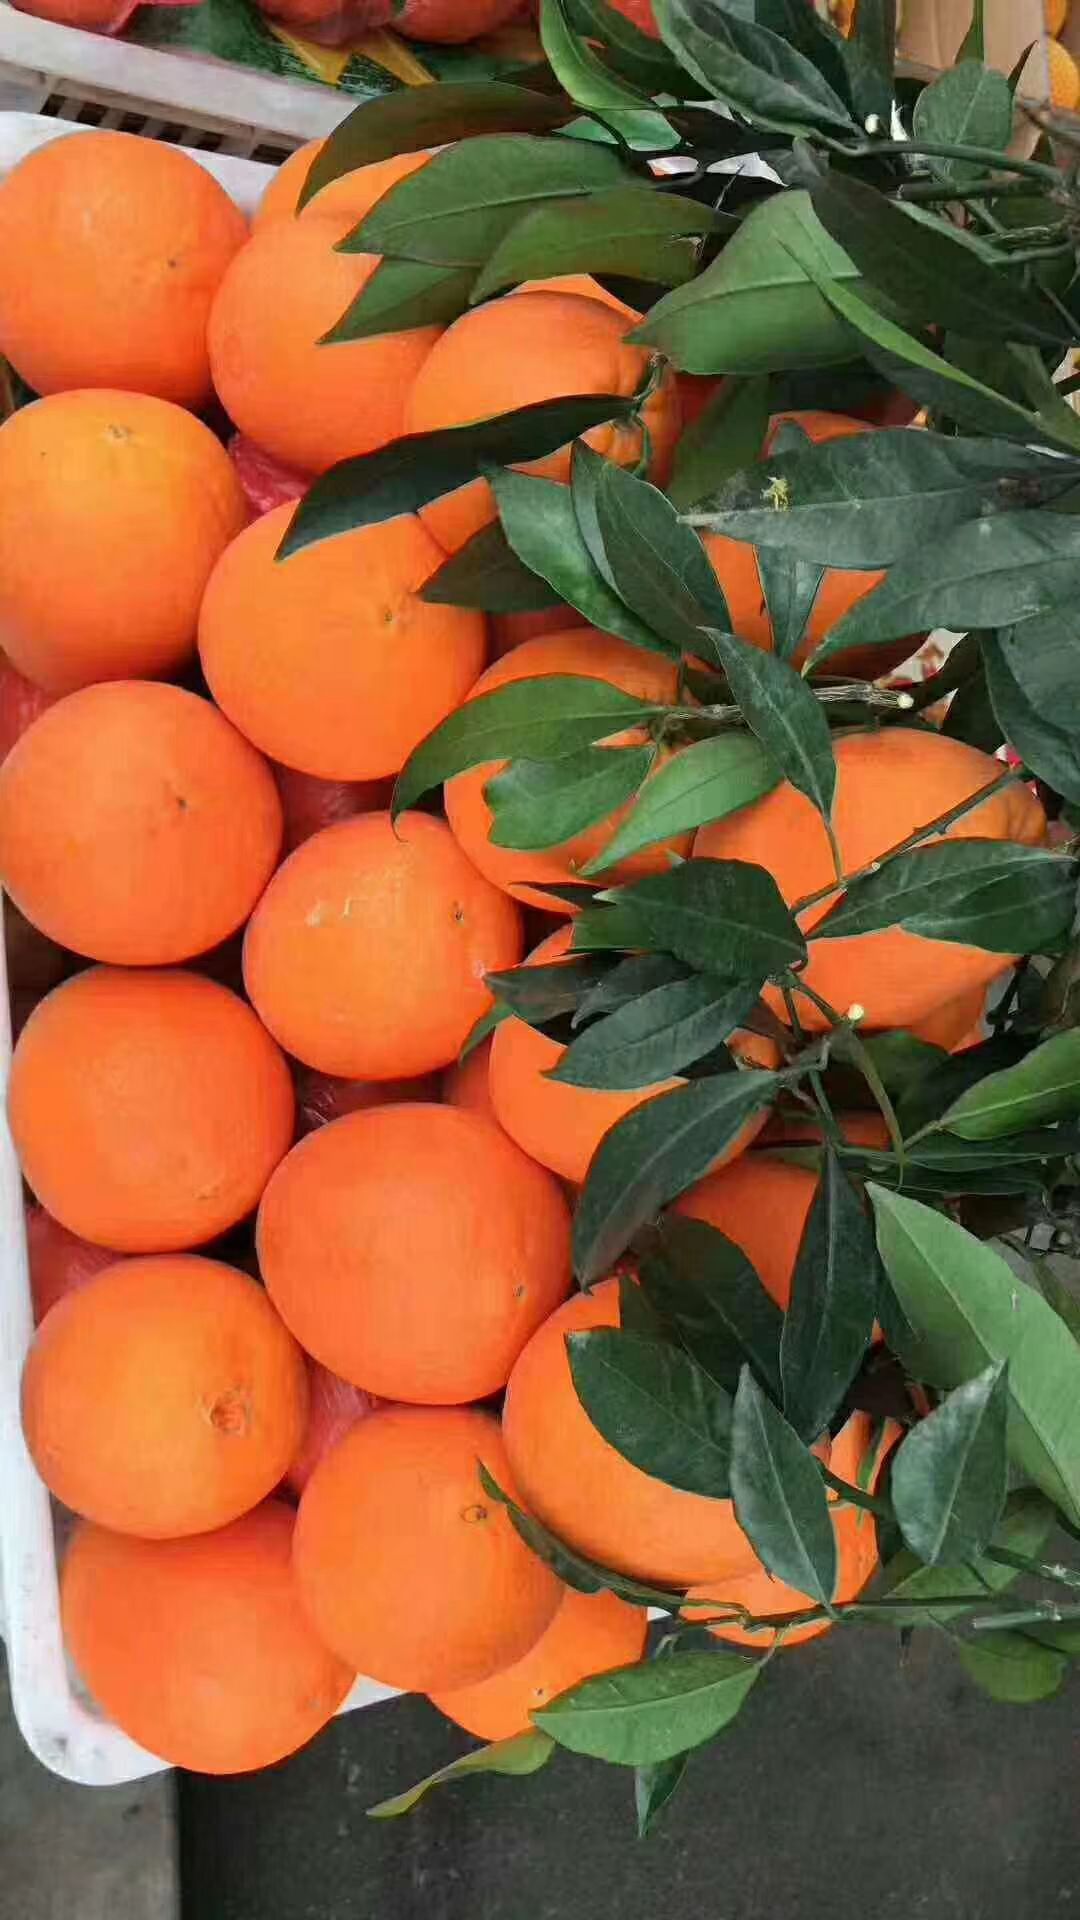 我是农村橙子种植户,欢迎各位老板来批发,量大有货,没有中间商